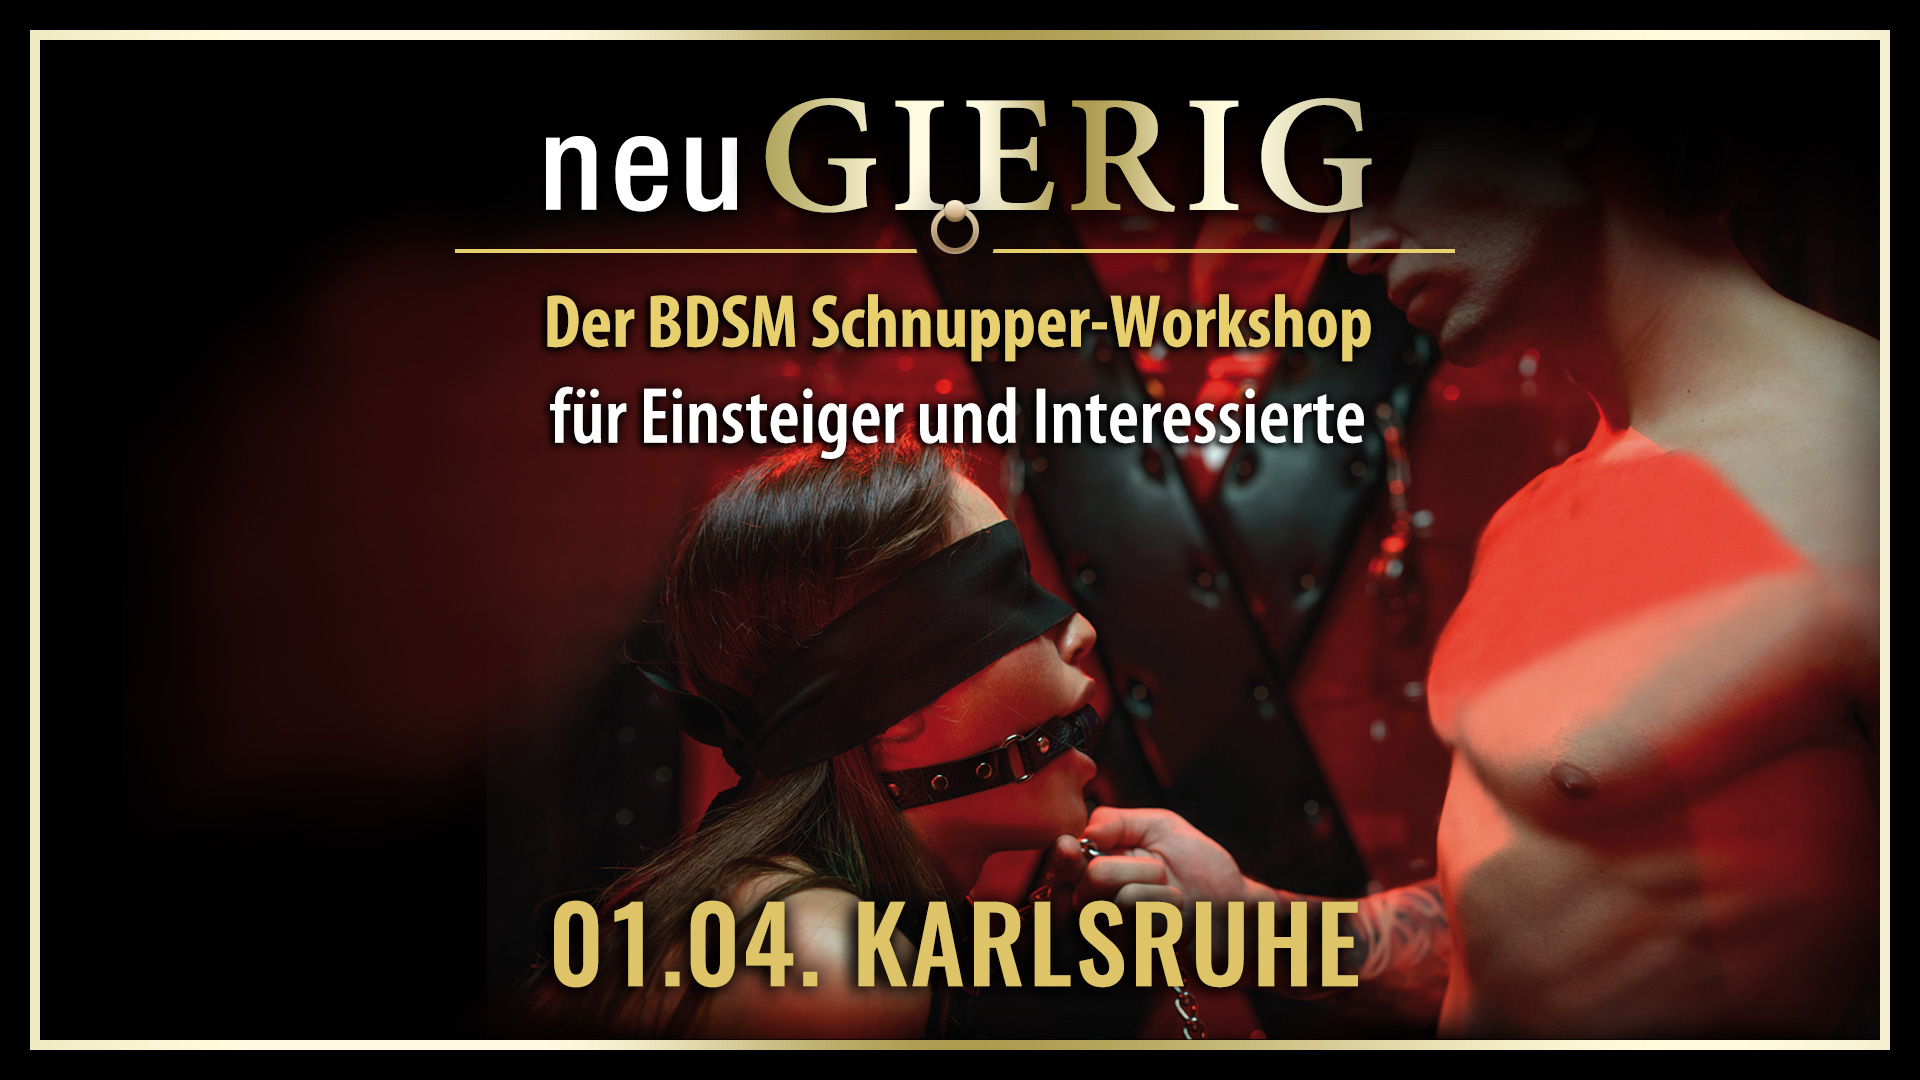 neuGIERIG » Der BDSM Schnupper-Workshop für Einsteiger und Interessierte mit GILLIAN im Rahmen der obscene Fetisch, BDSM und Erotik Messe in Karlsruhe.